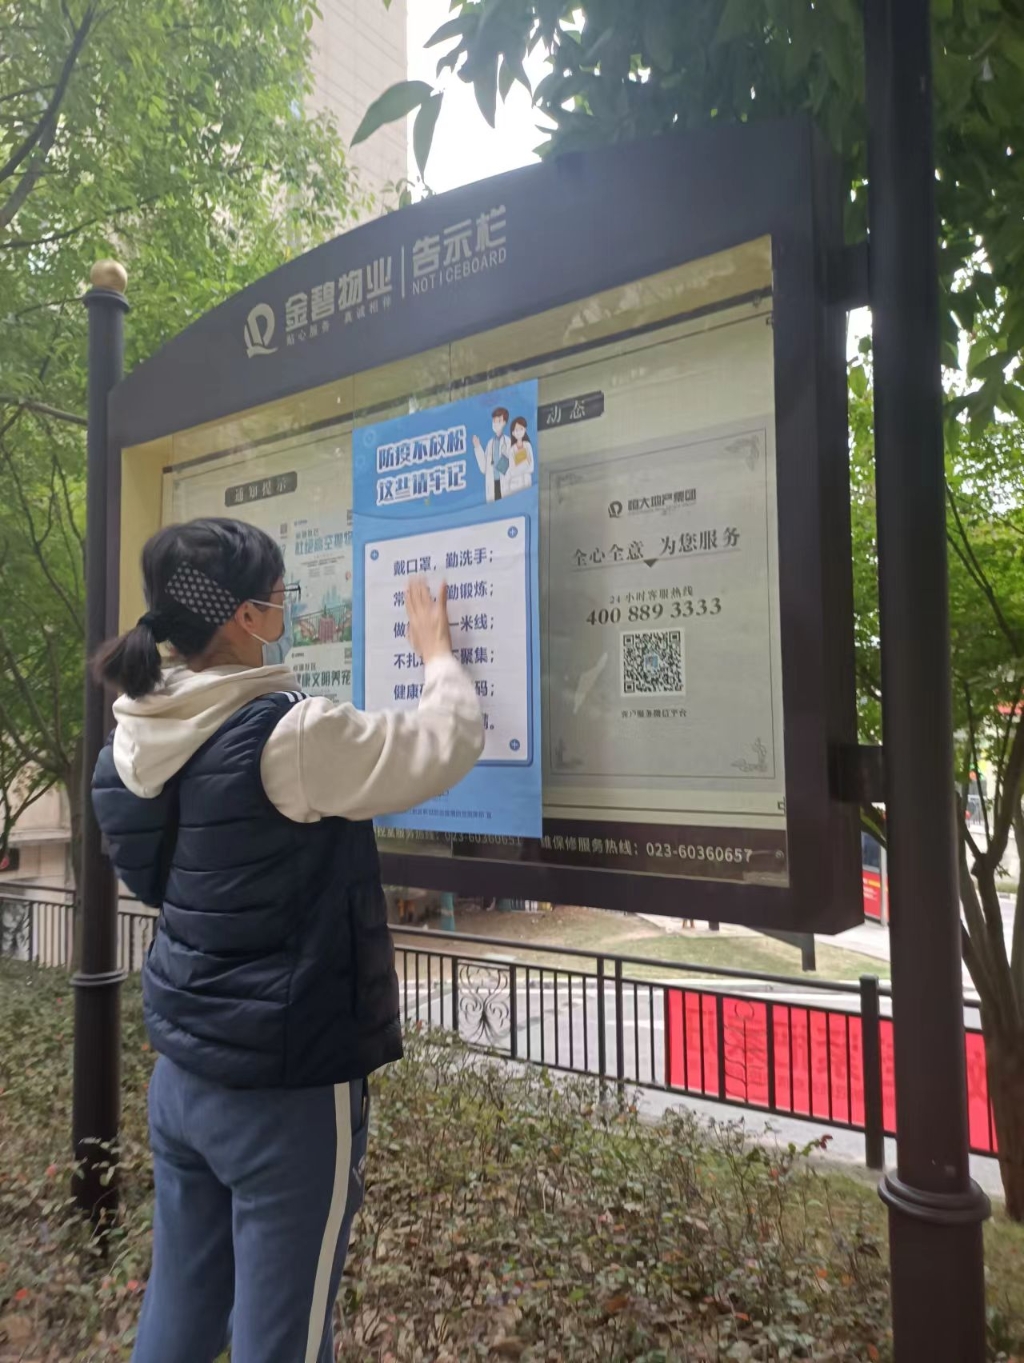 市大数据局机关信息化推进处党支部李小萍在社区张贴宣传海报。市大数据发展局供图